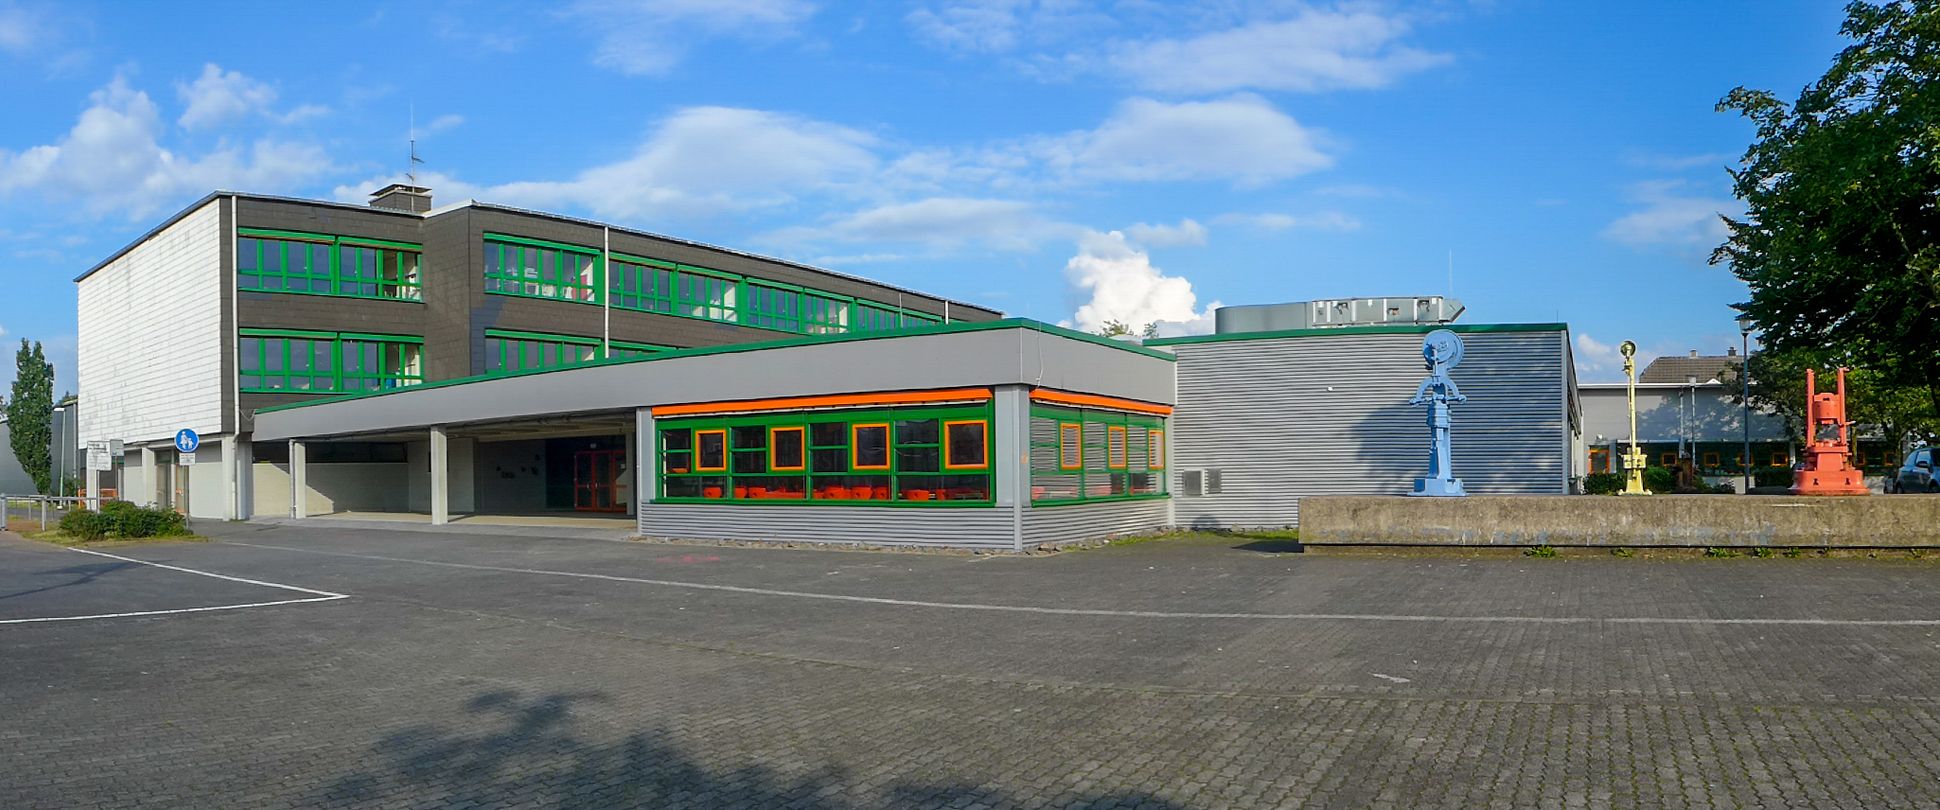 Gebäude mit grünen Fenstern